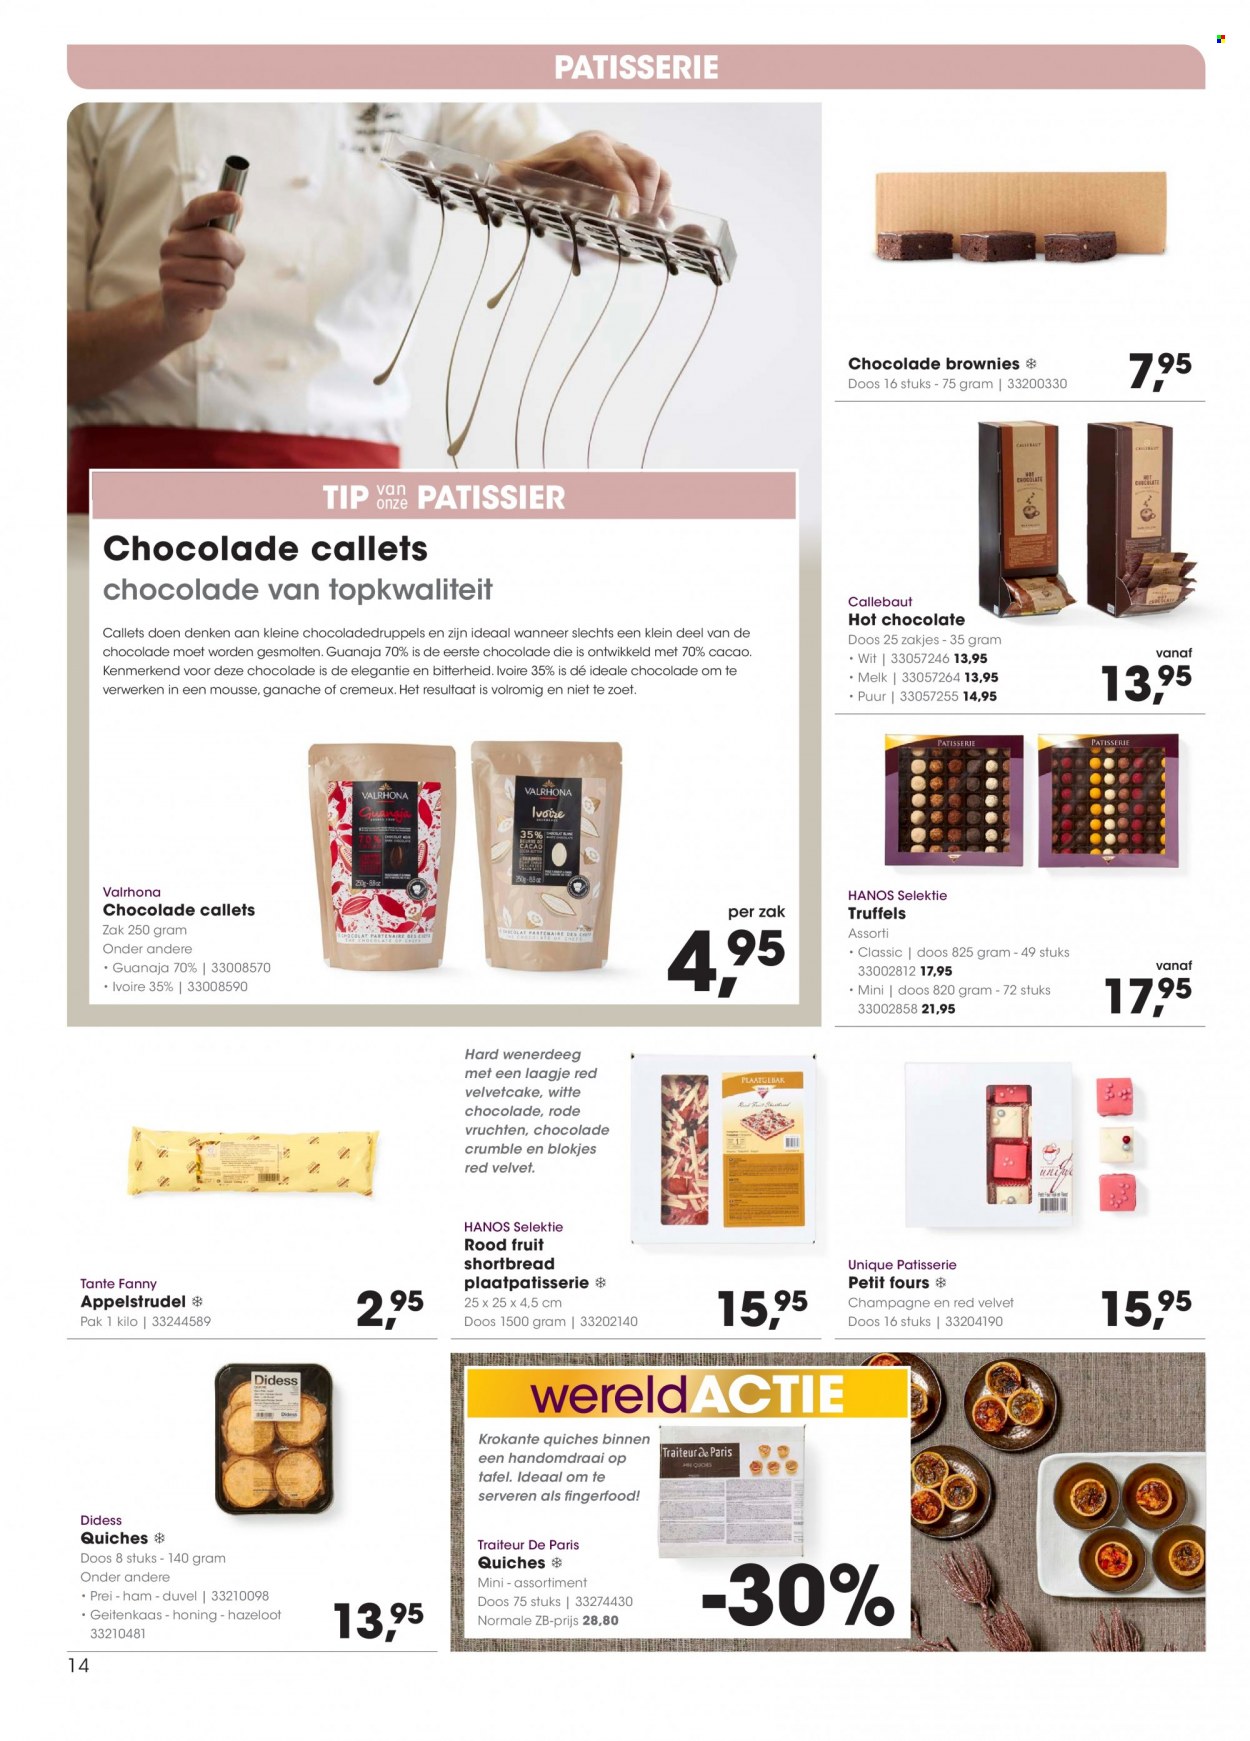 thumbnail - Hanos-aanbieding - 29-11-2021 - 12-12-2021 -  producten in de aanbieding - Duvel, bier, appelstrudel, petitfours, brownie, rode vruchten, ham, melk, chocolade, witte chocolade, champagne. Pagina 14.